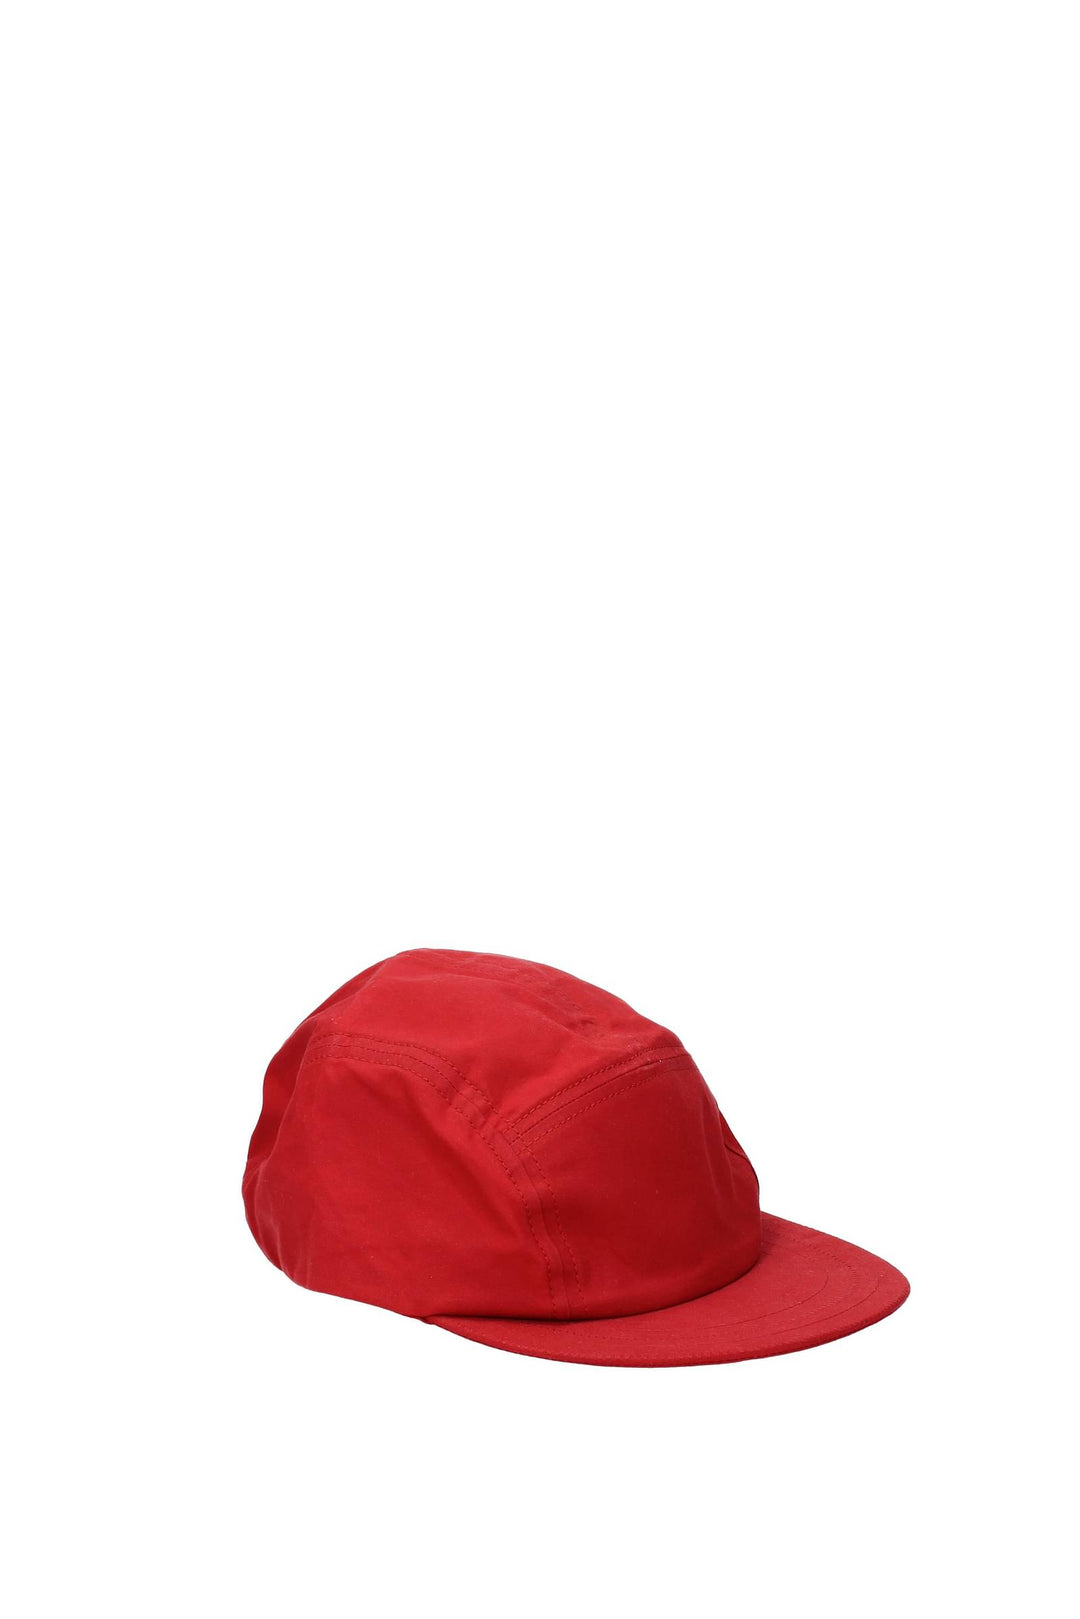 Cappelli Cotone Rosso - Jacquemus - Uomo